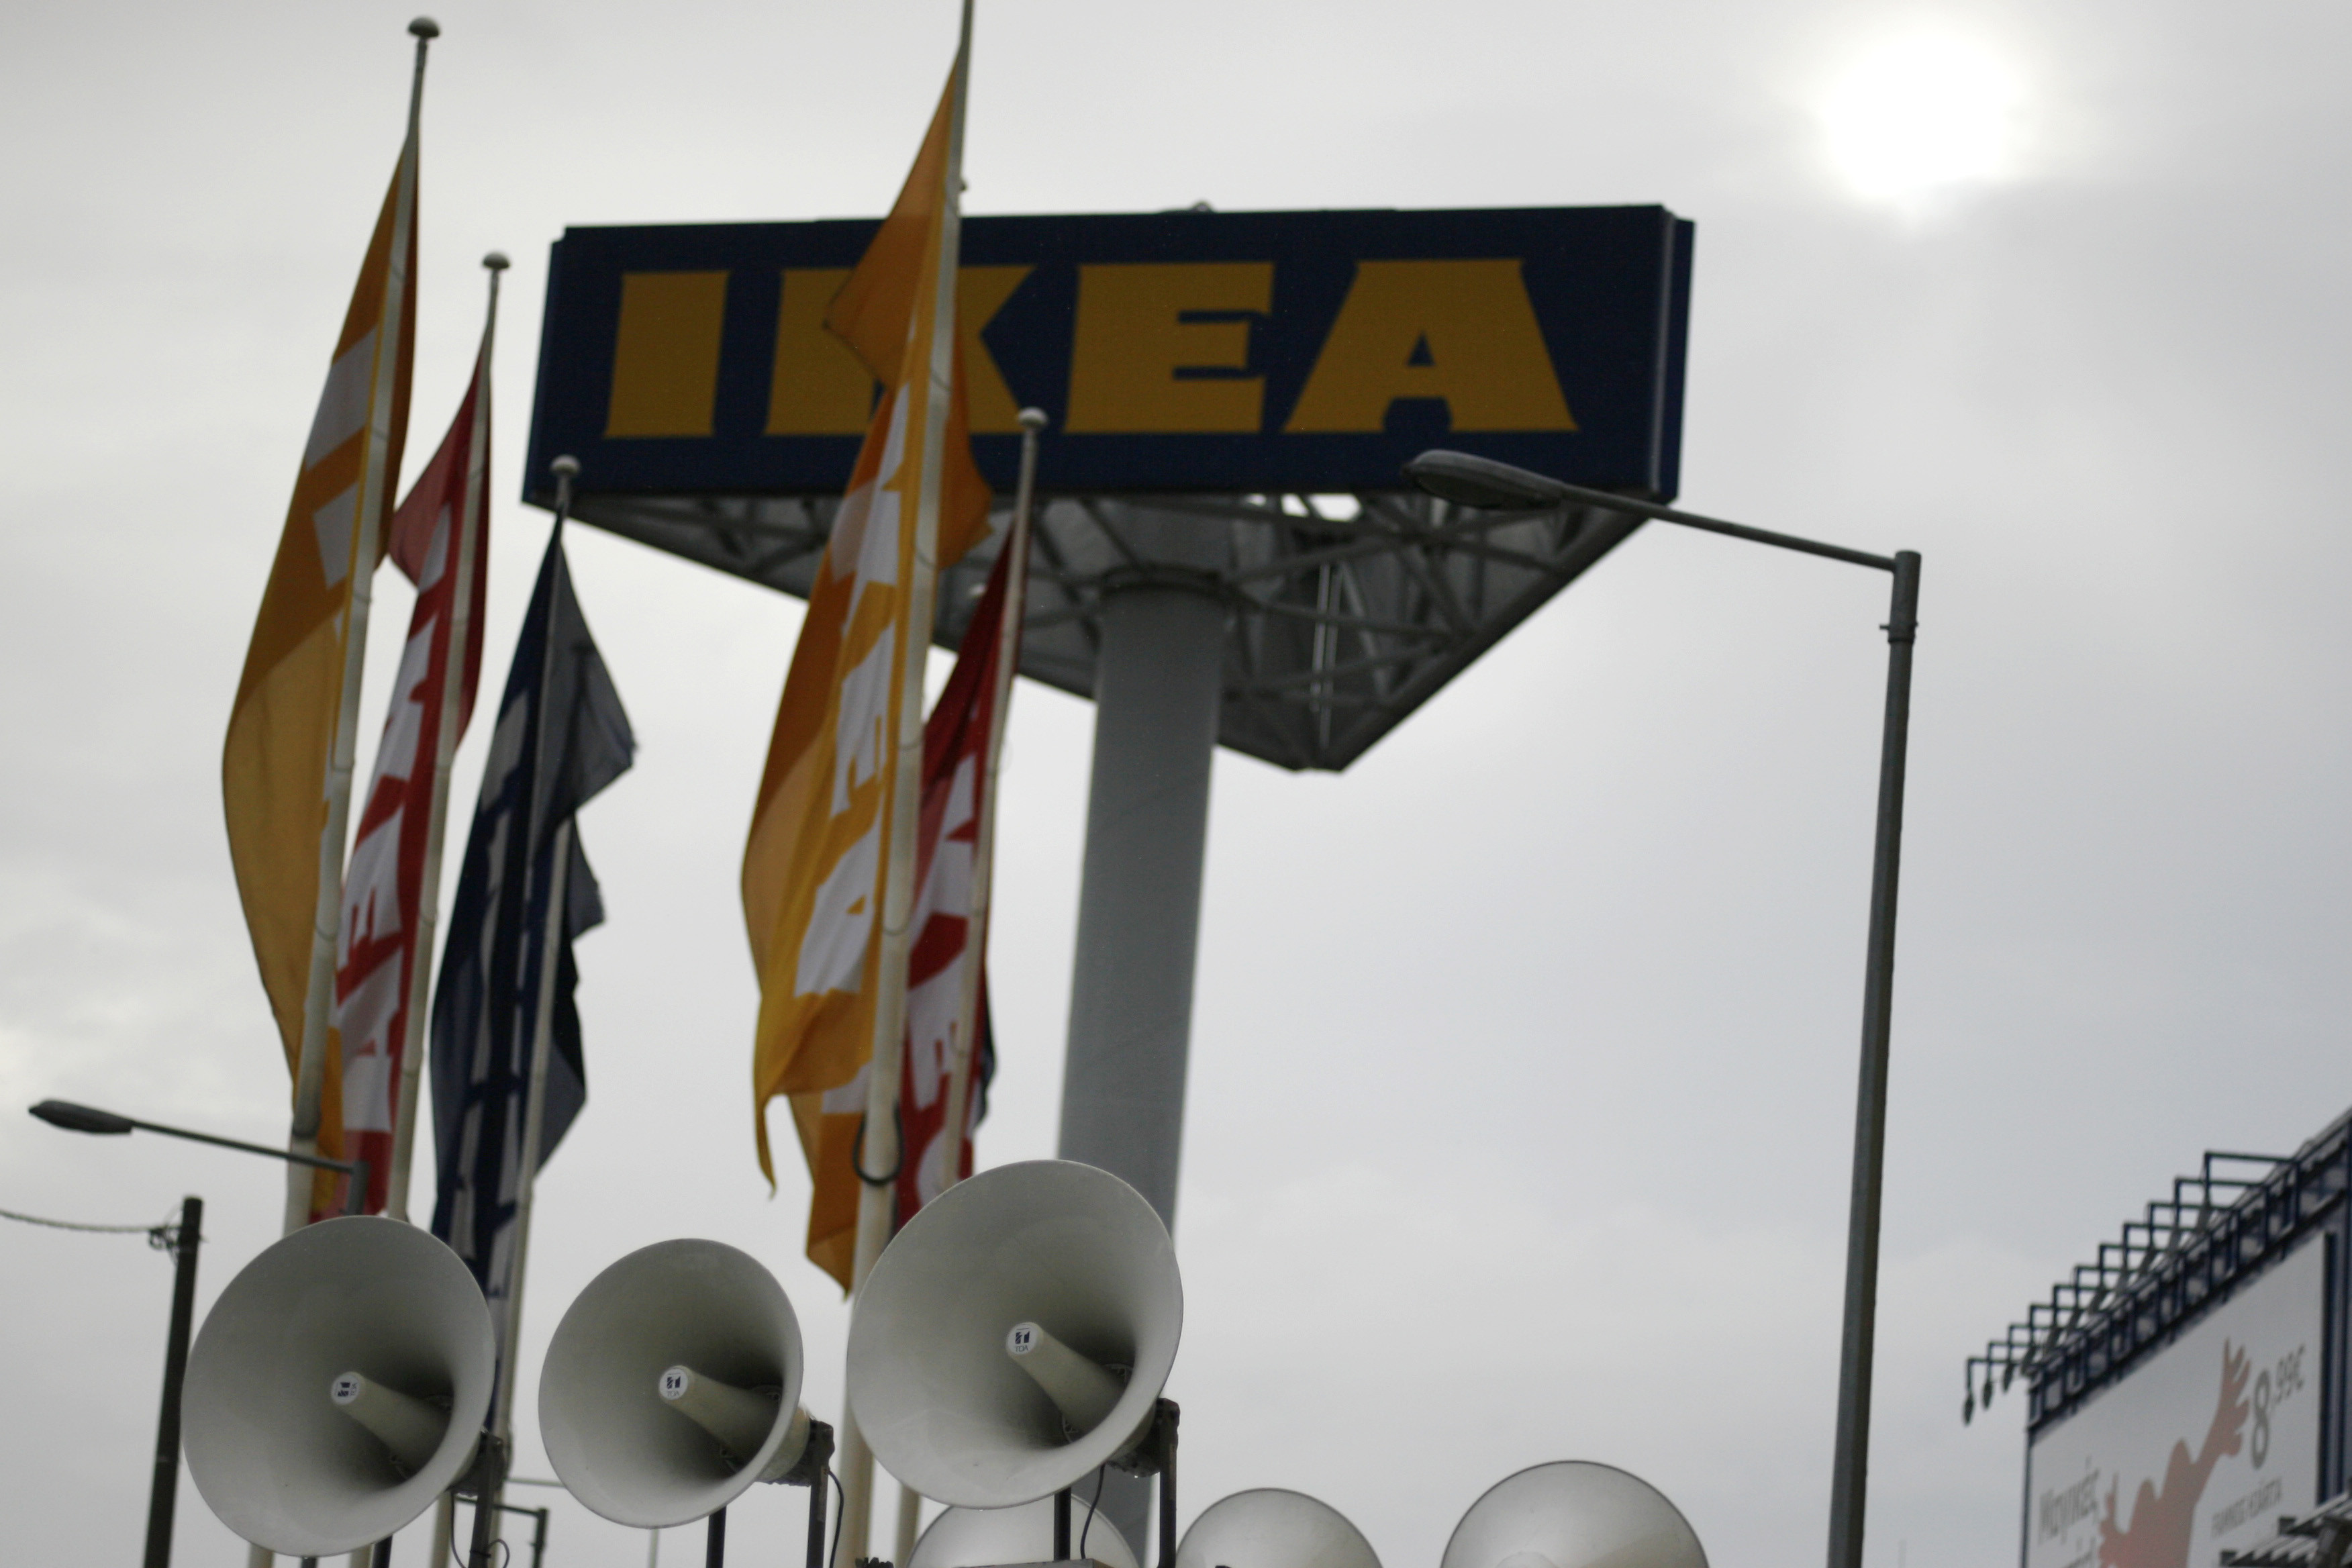 Ιδού η συνταγή επιτυχίας στην ελληνική IKEA: Ακριβά έπιπλα, μειώσεις μισθών